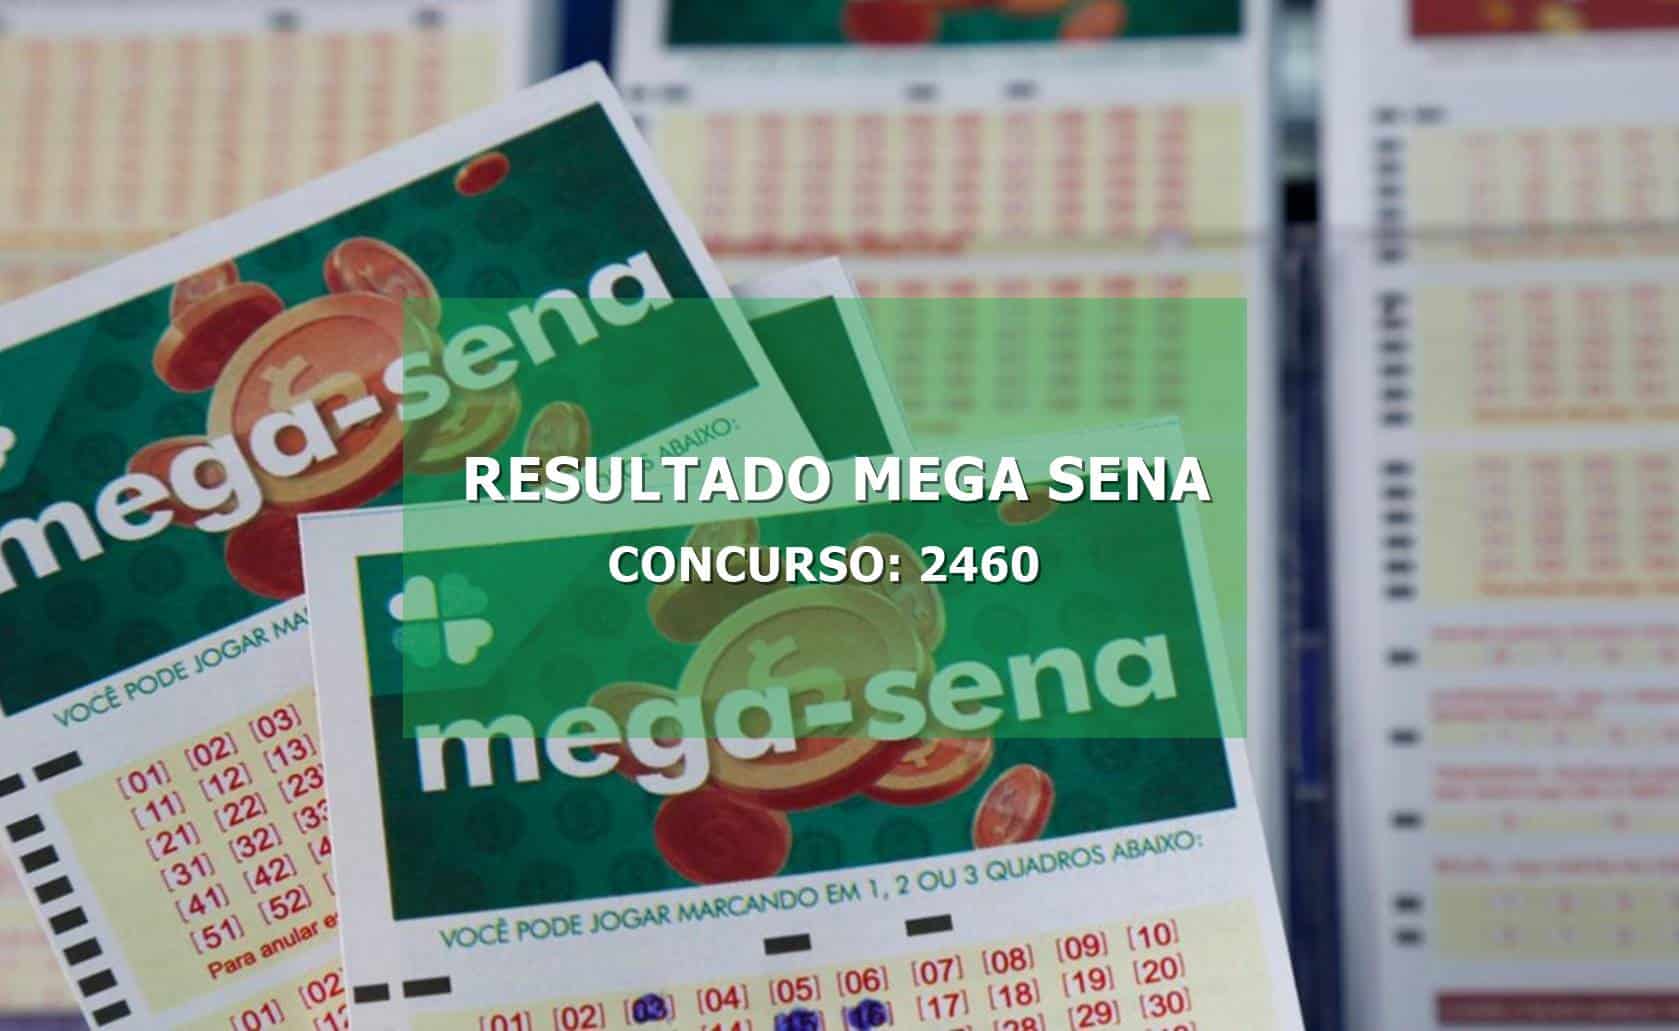 Mega-sena R$ 107 milhões: confira números sorteados concurso 2460 - Informe  Brasil